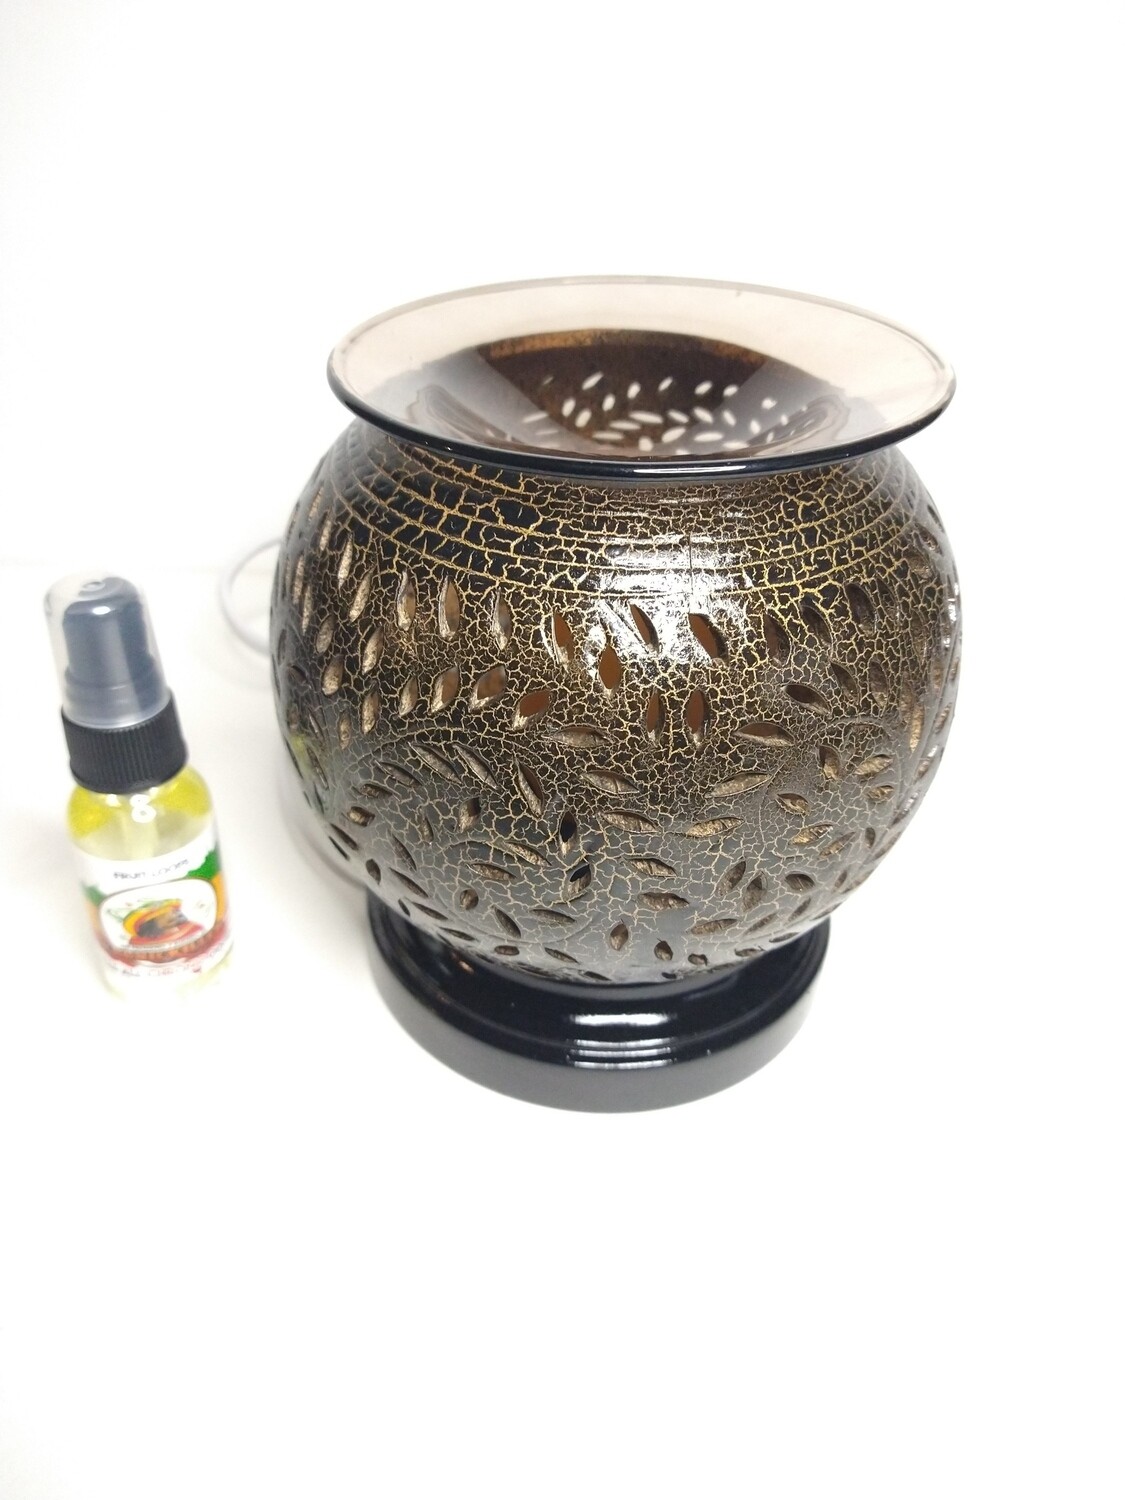 Fragrance oil lamp